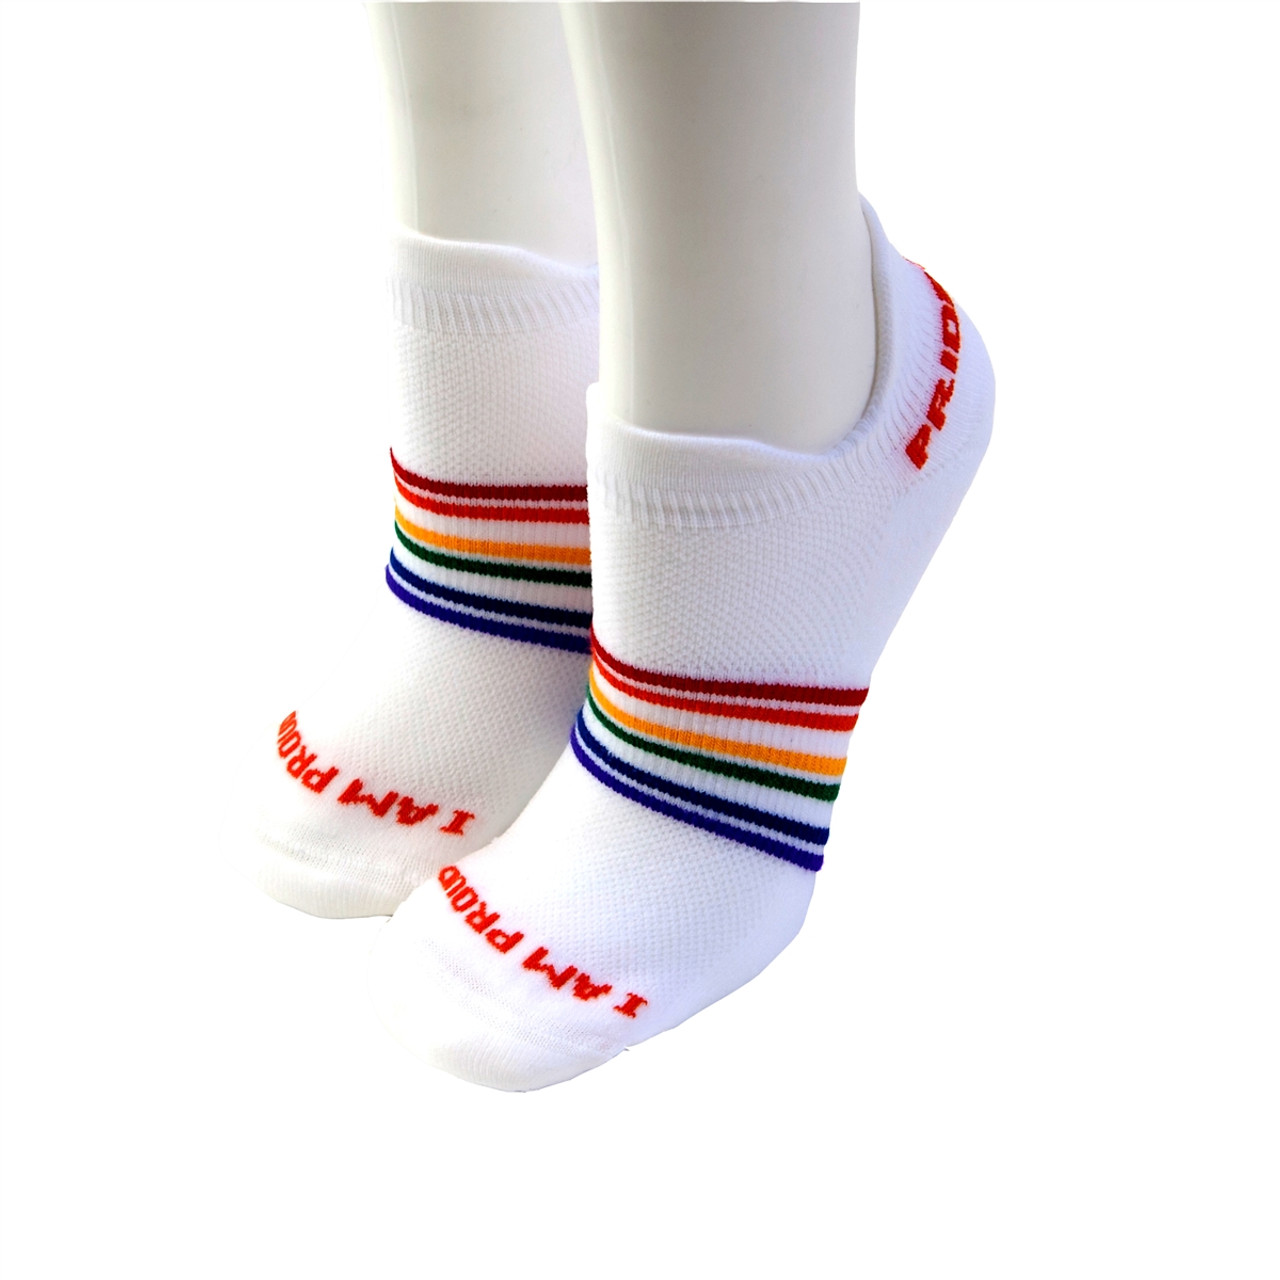 Rainbow Striped Anklet Toe Socks